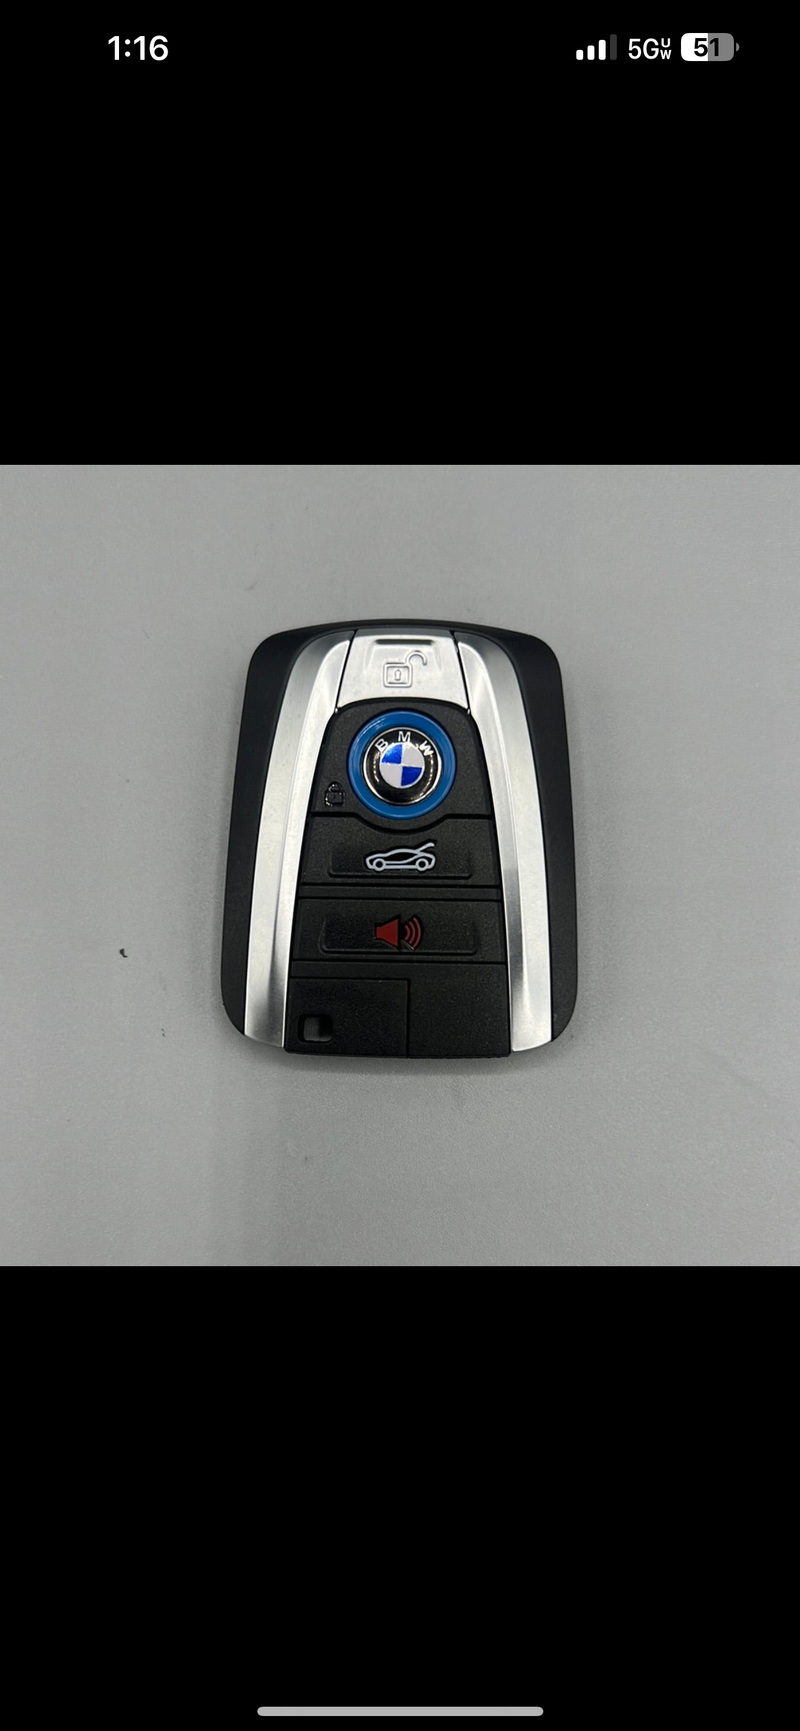 BMW I8 / I3 Smart Key 433MHz Proximity FEM Protocol